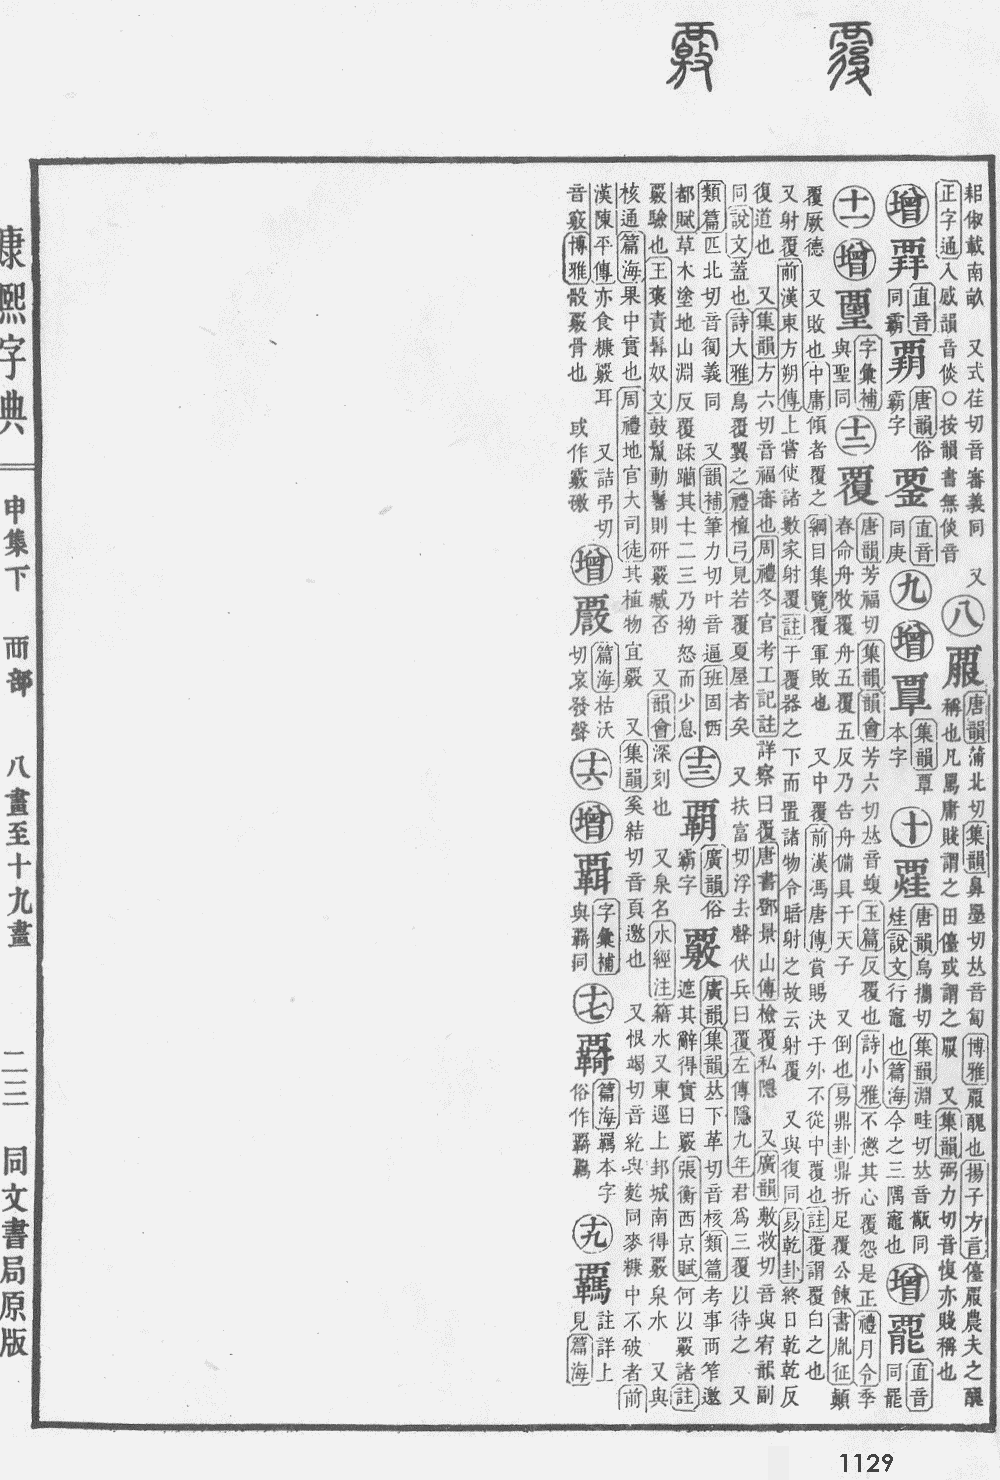 康熙字典掃描版第1129頁